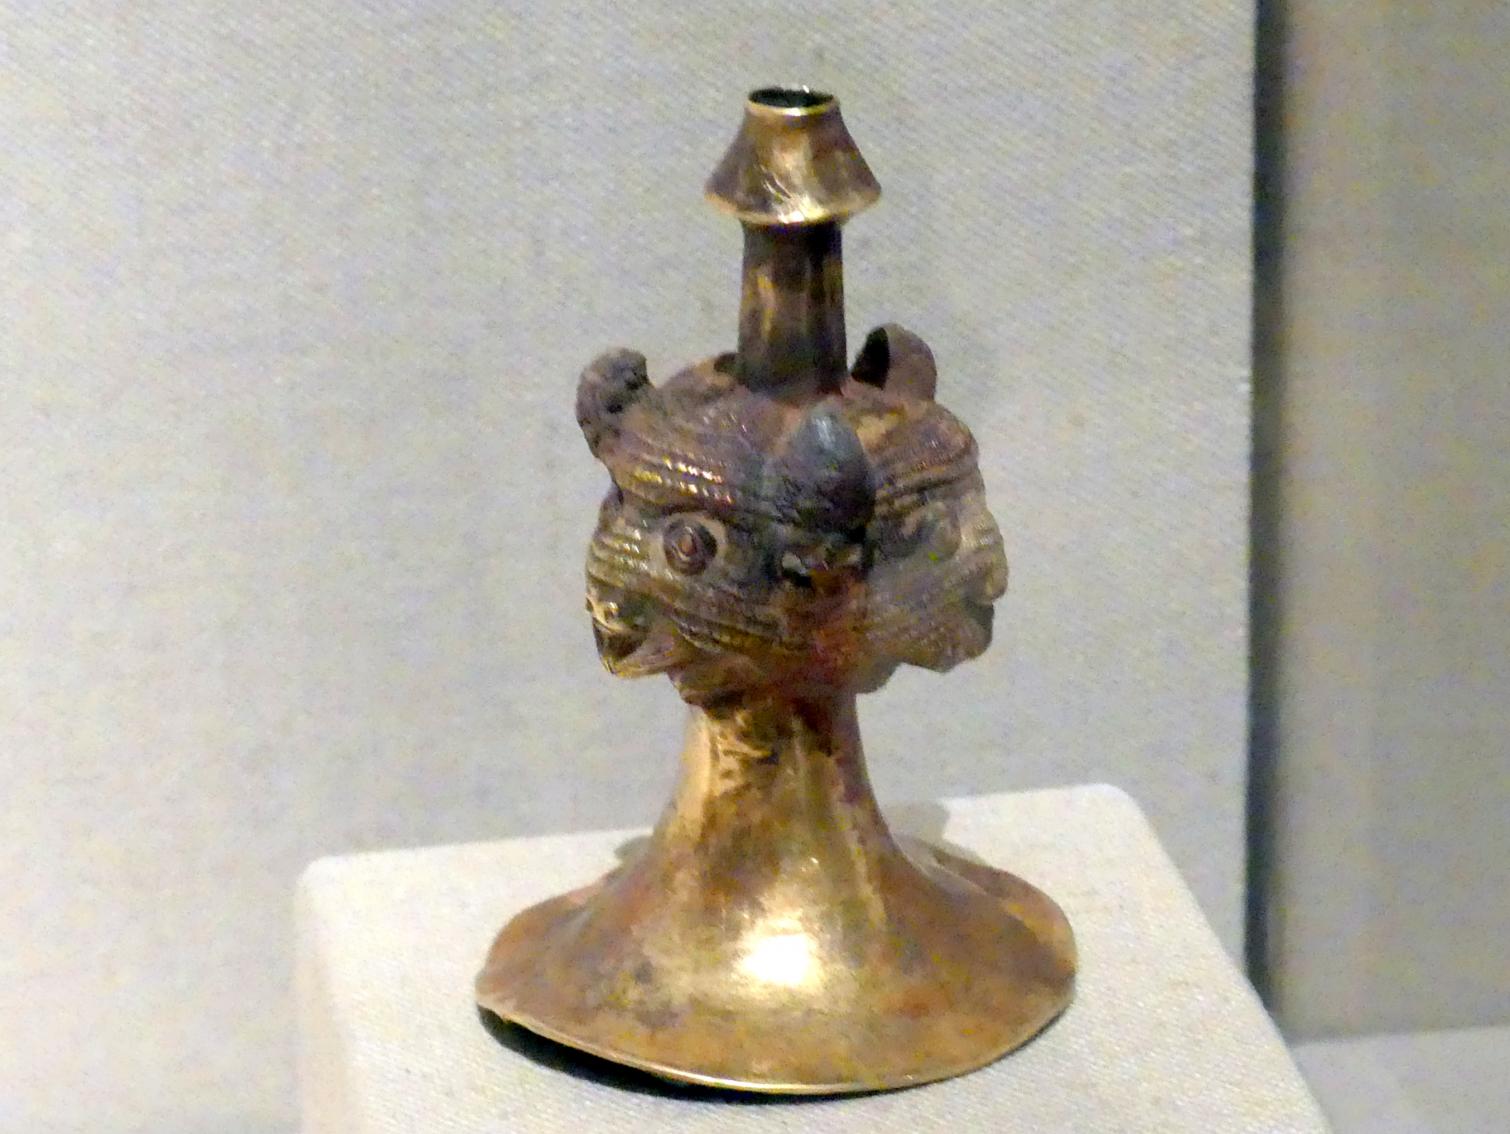 'Trompete' mit Bisonköpfen, 2000 - 1800 v. Chr., Bild 1/2